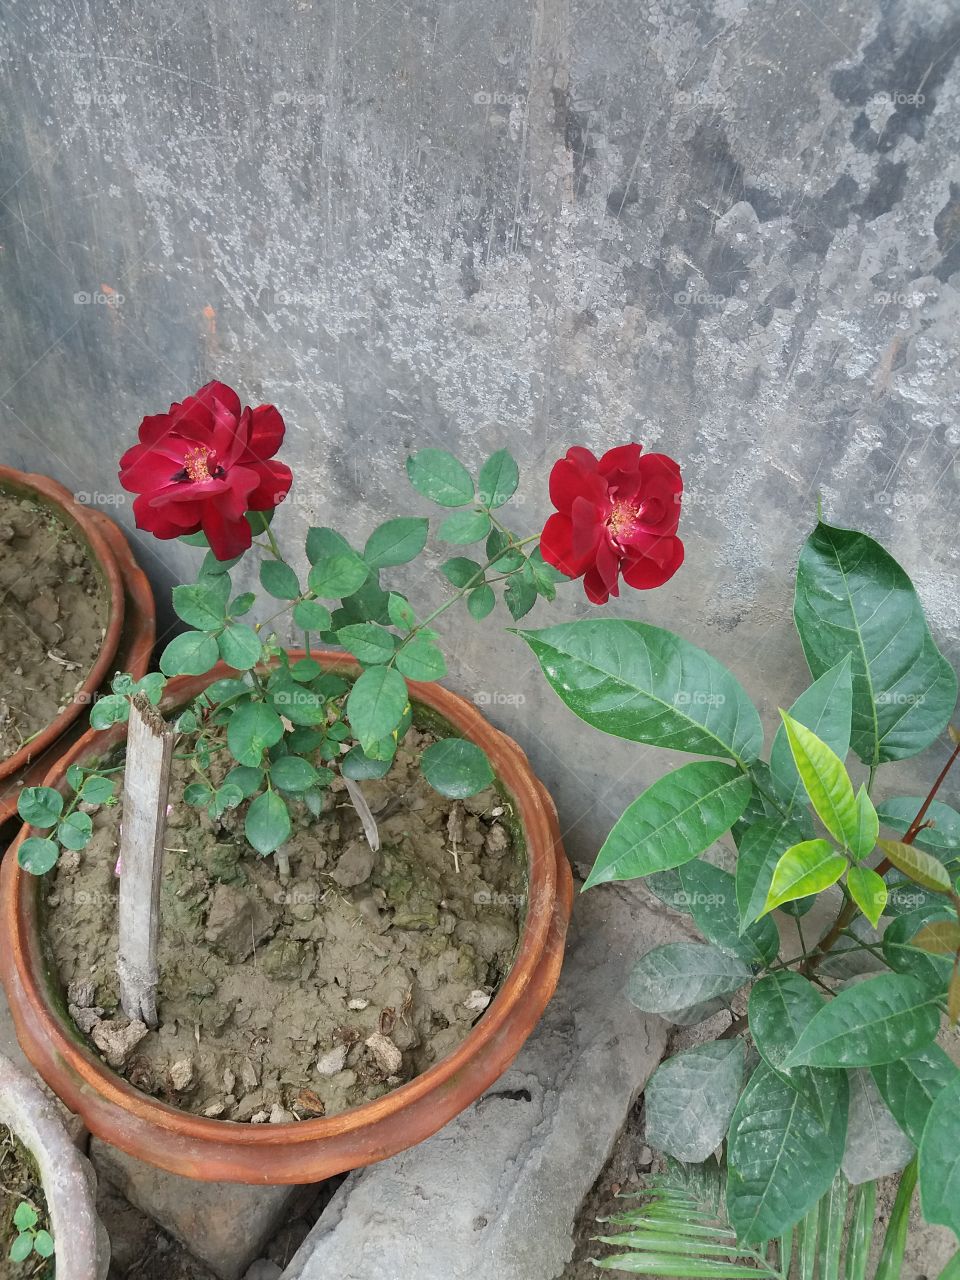 flower of my garden